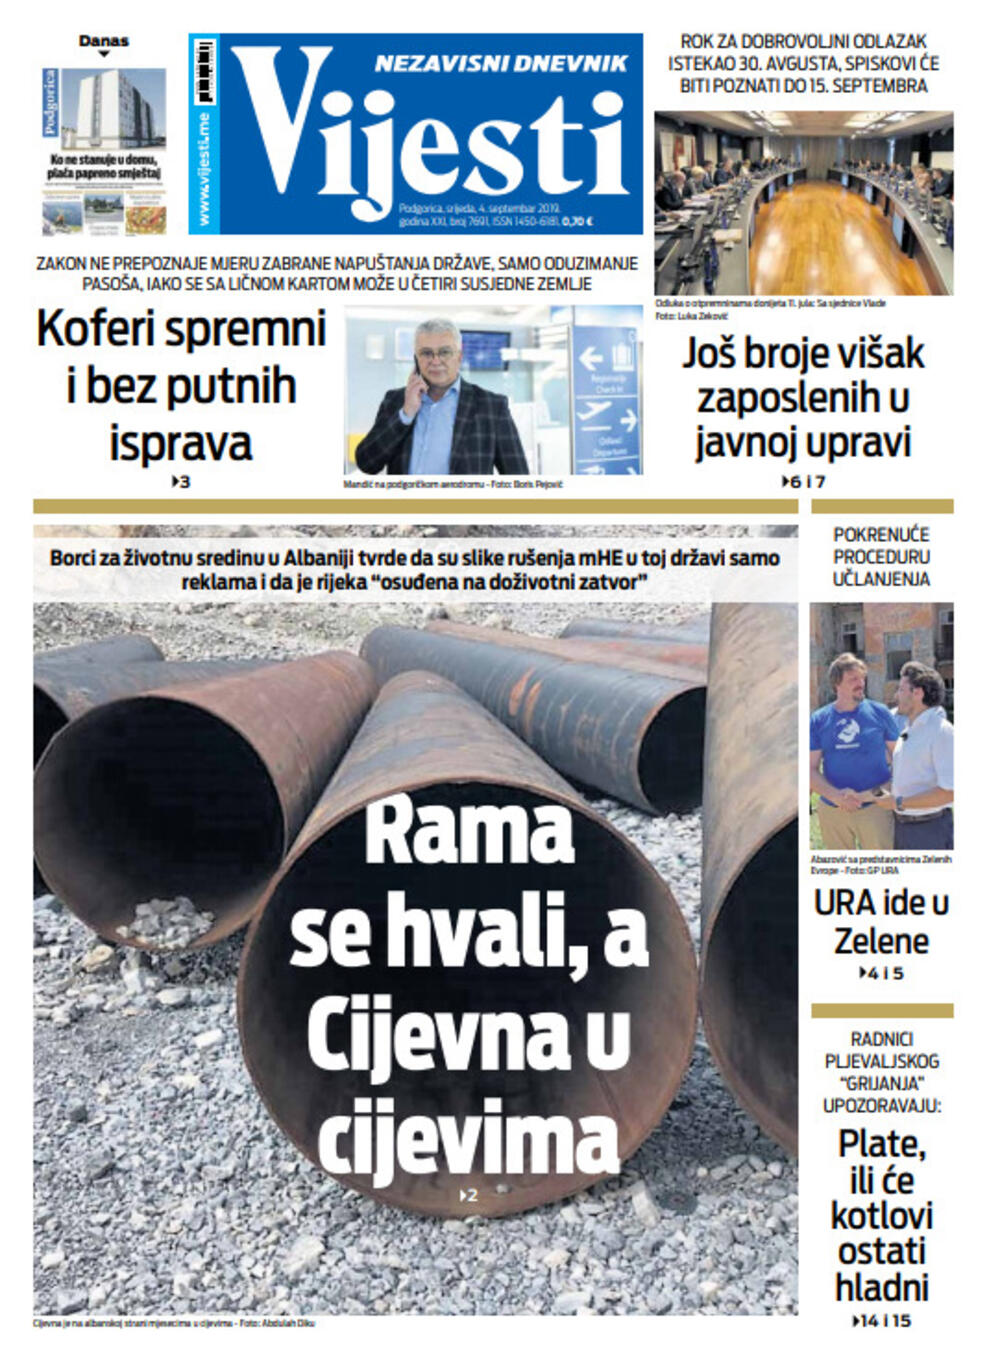 Naslovna strana "Vijesti" za četvrti septembar, Foto: Vijesti